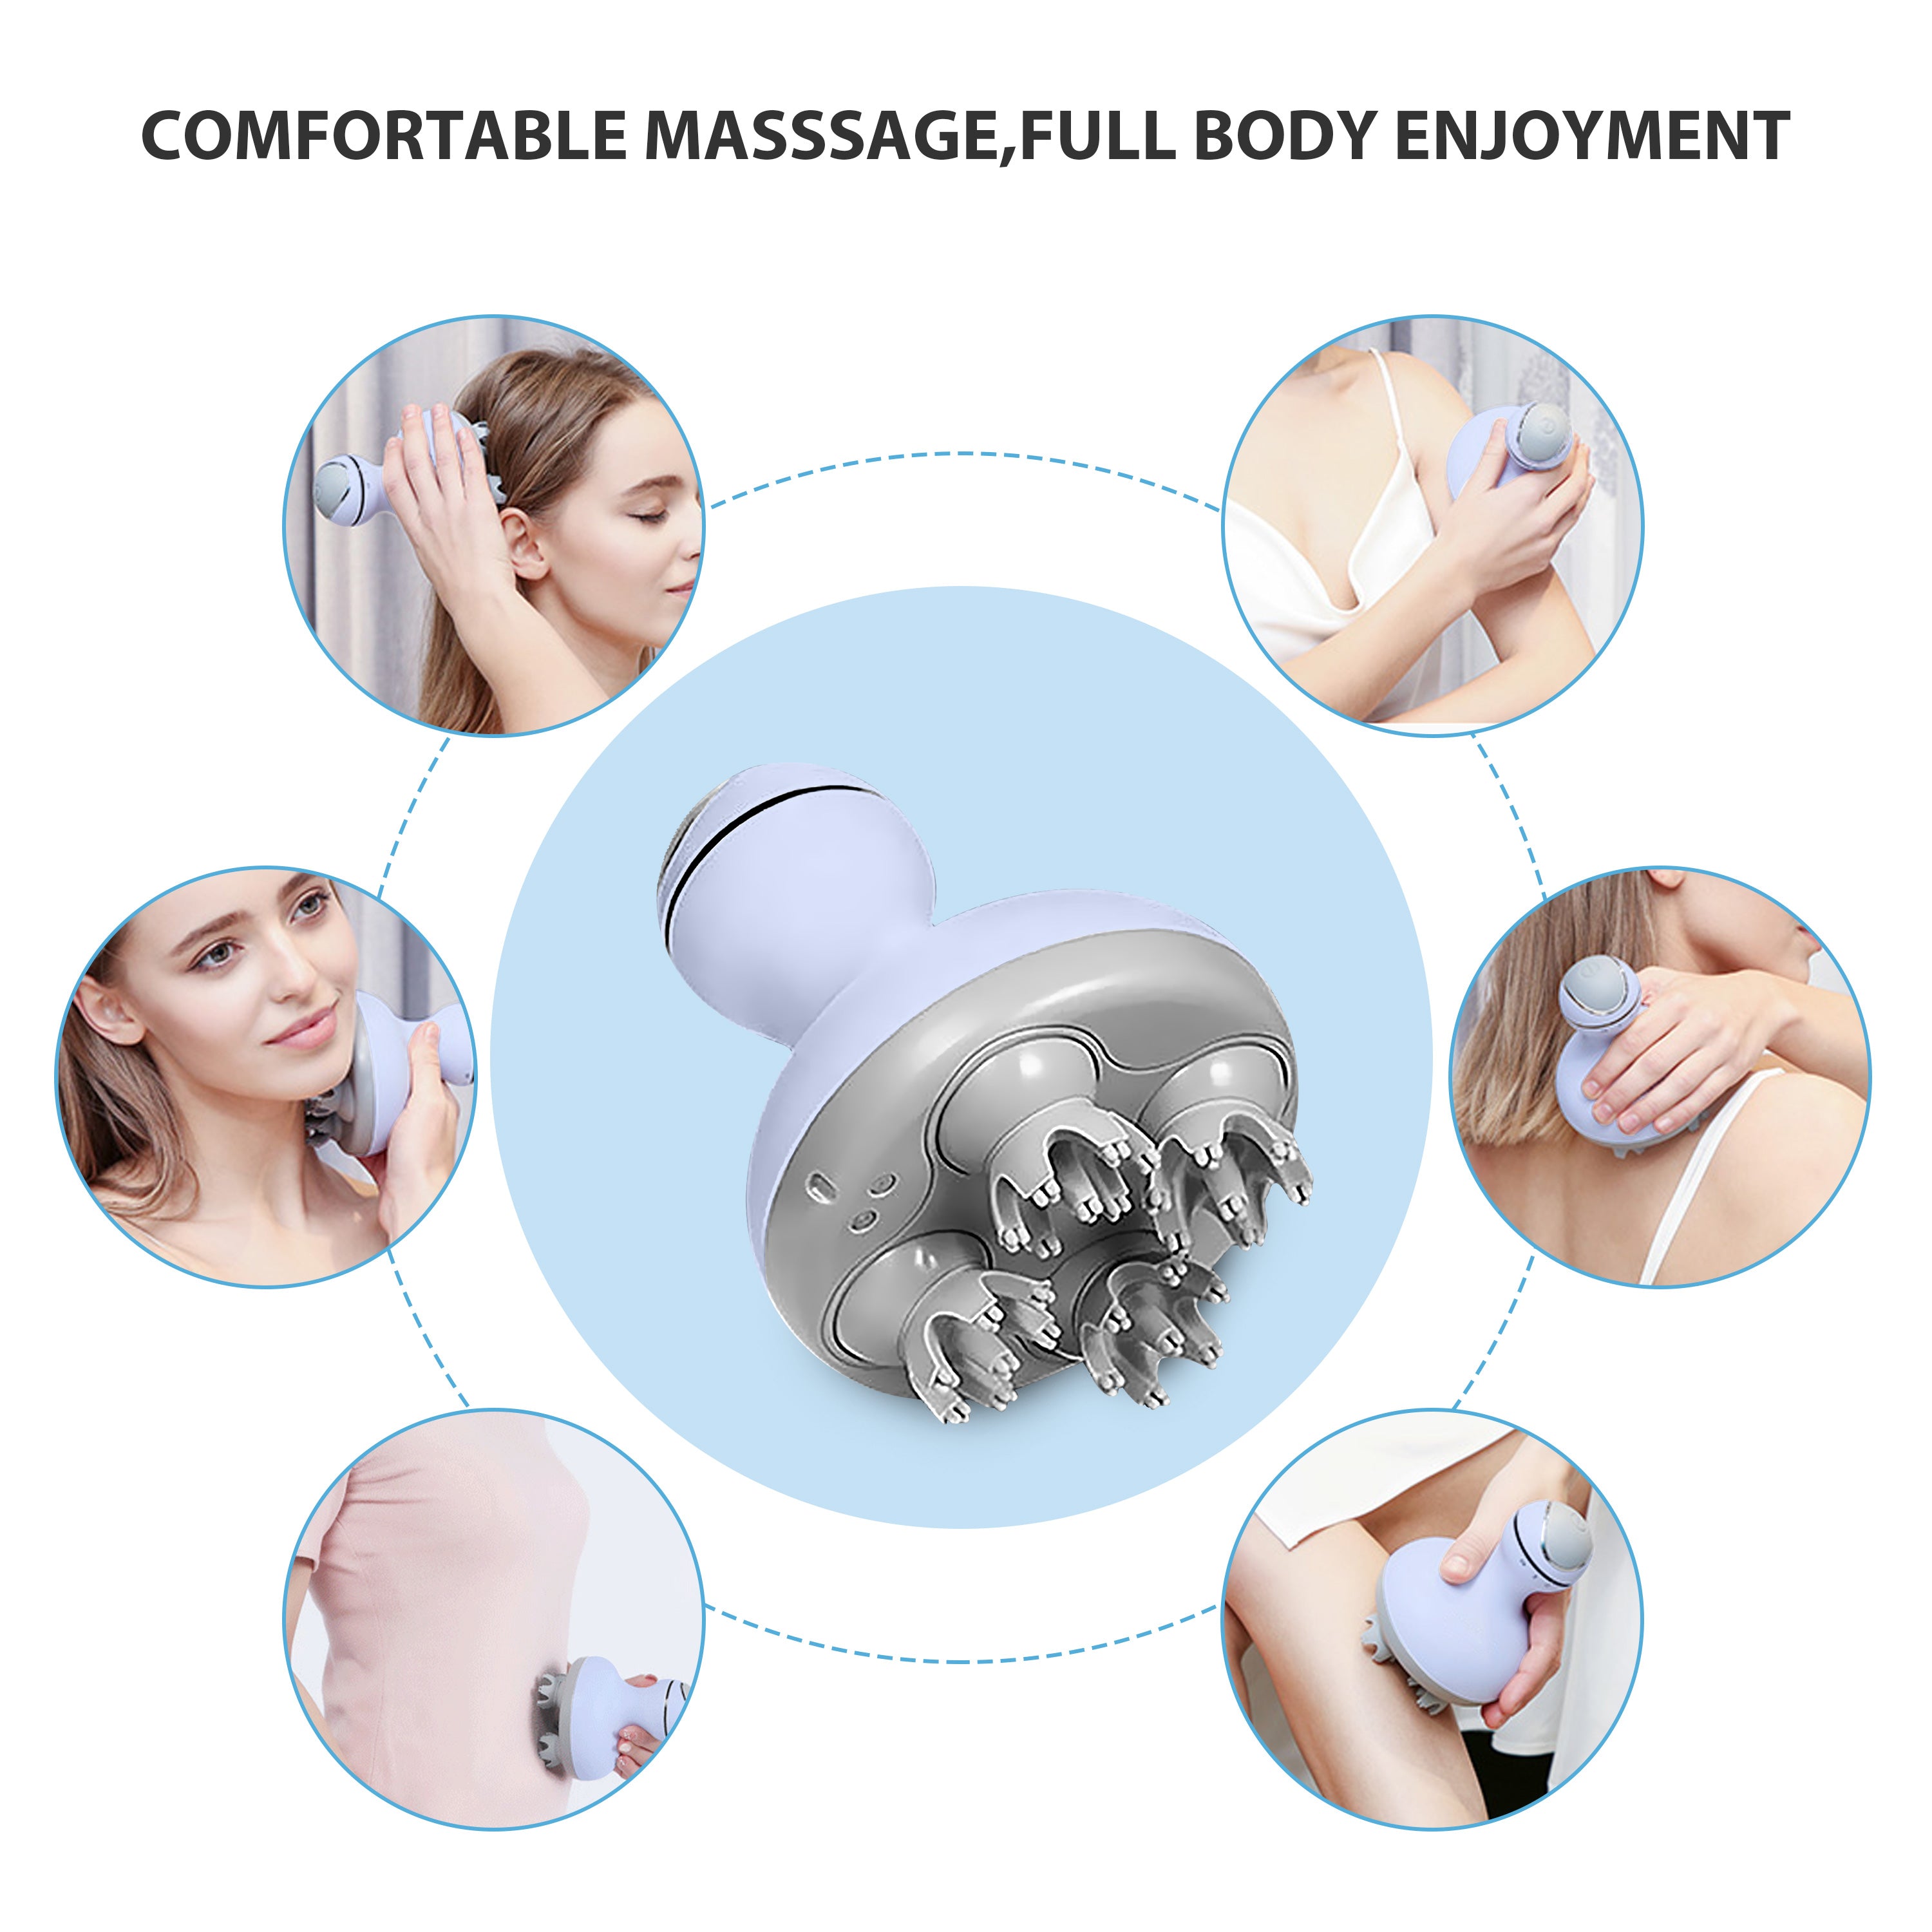 Comfier Cordless Hair Scalp Massager,head massager for Hair Growth, Deep Clean and Stress Relax (Light Blue) - 4902LB